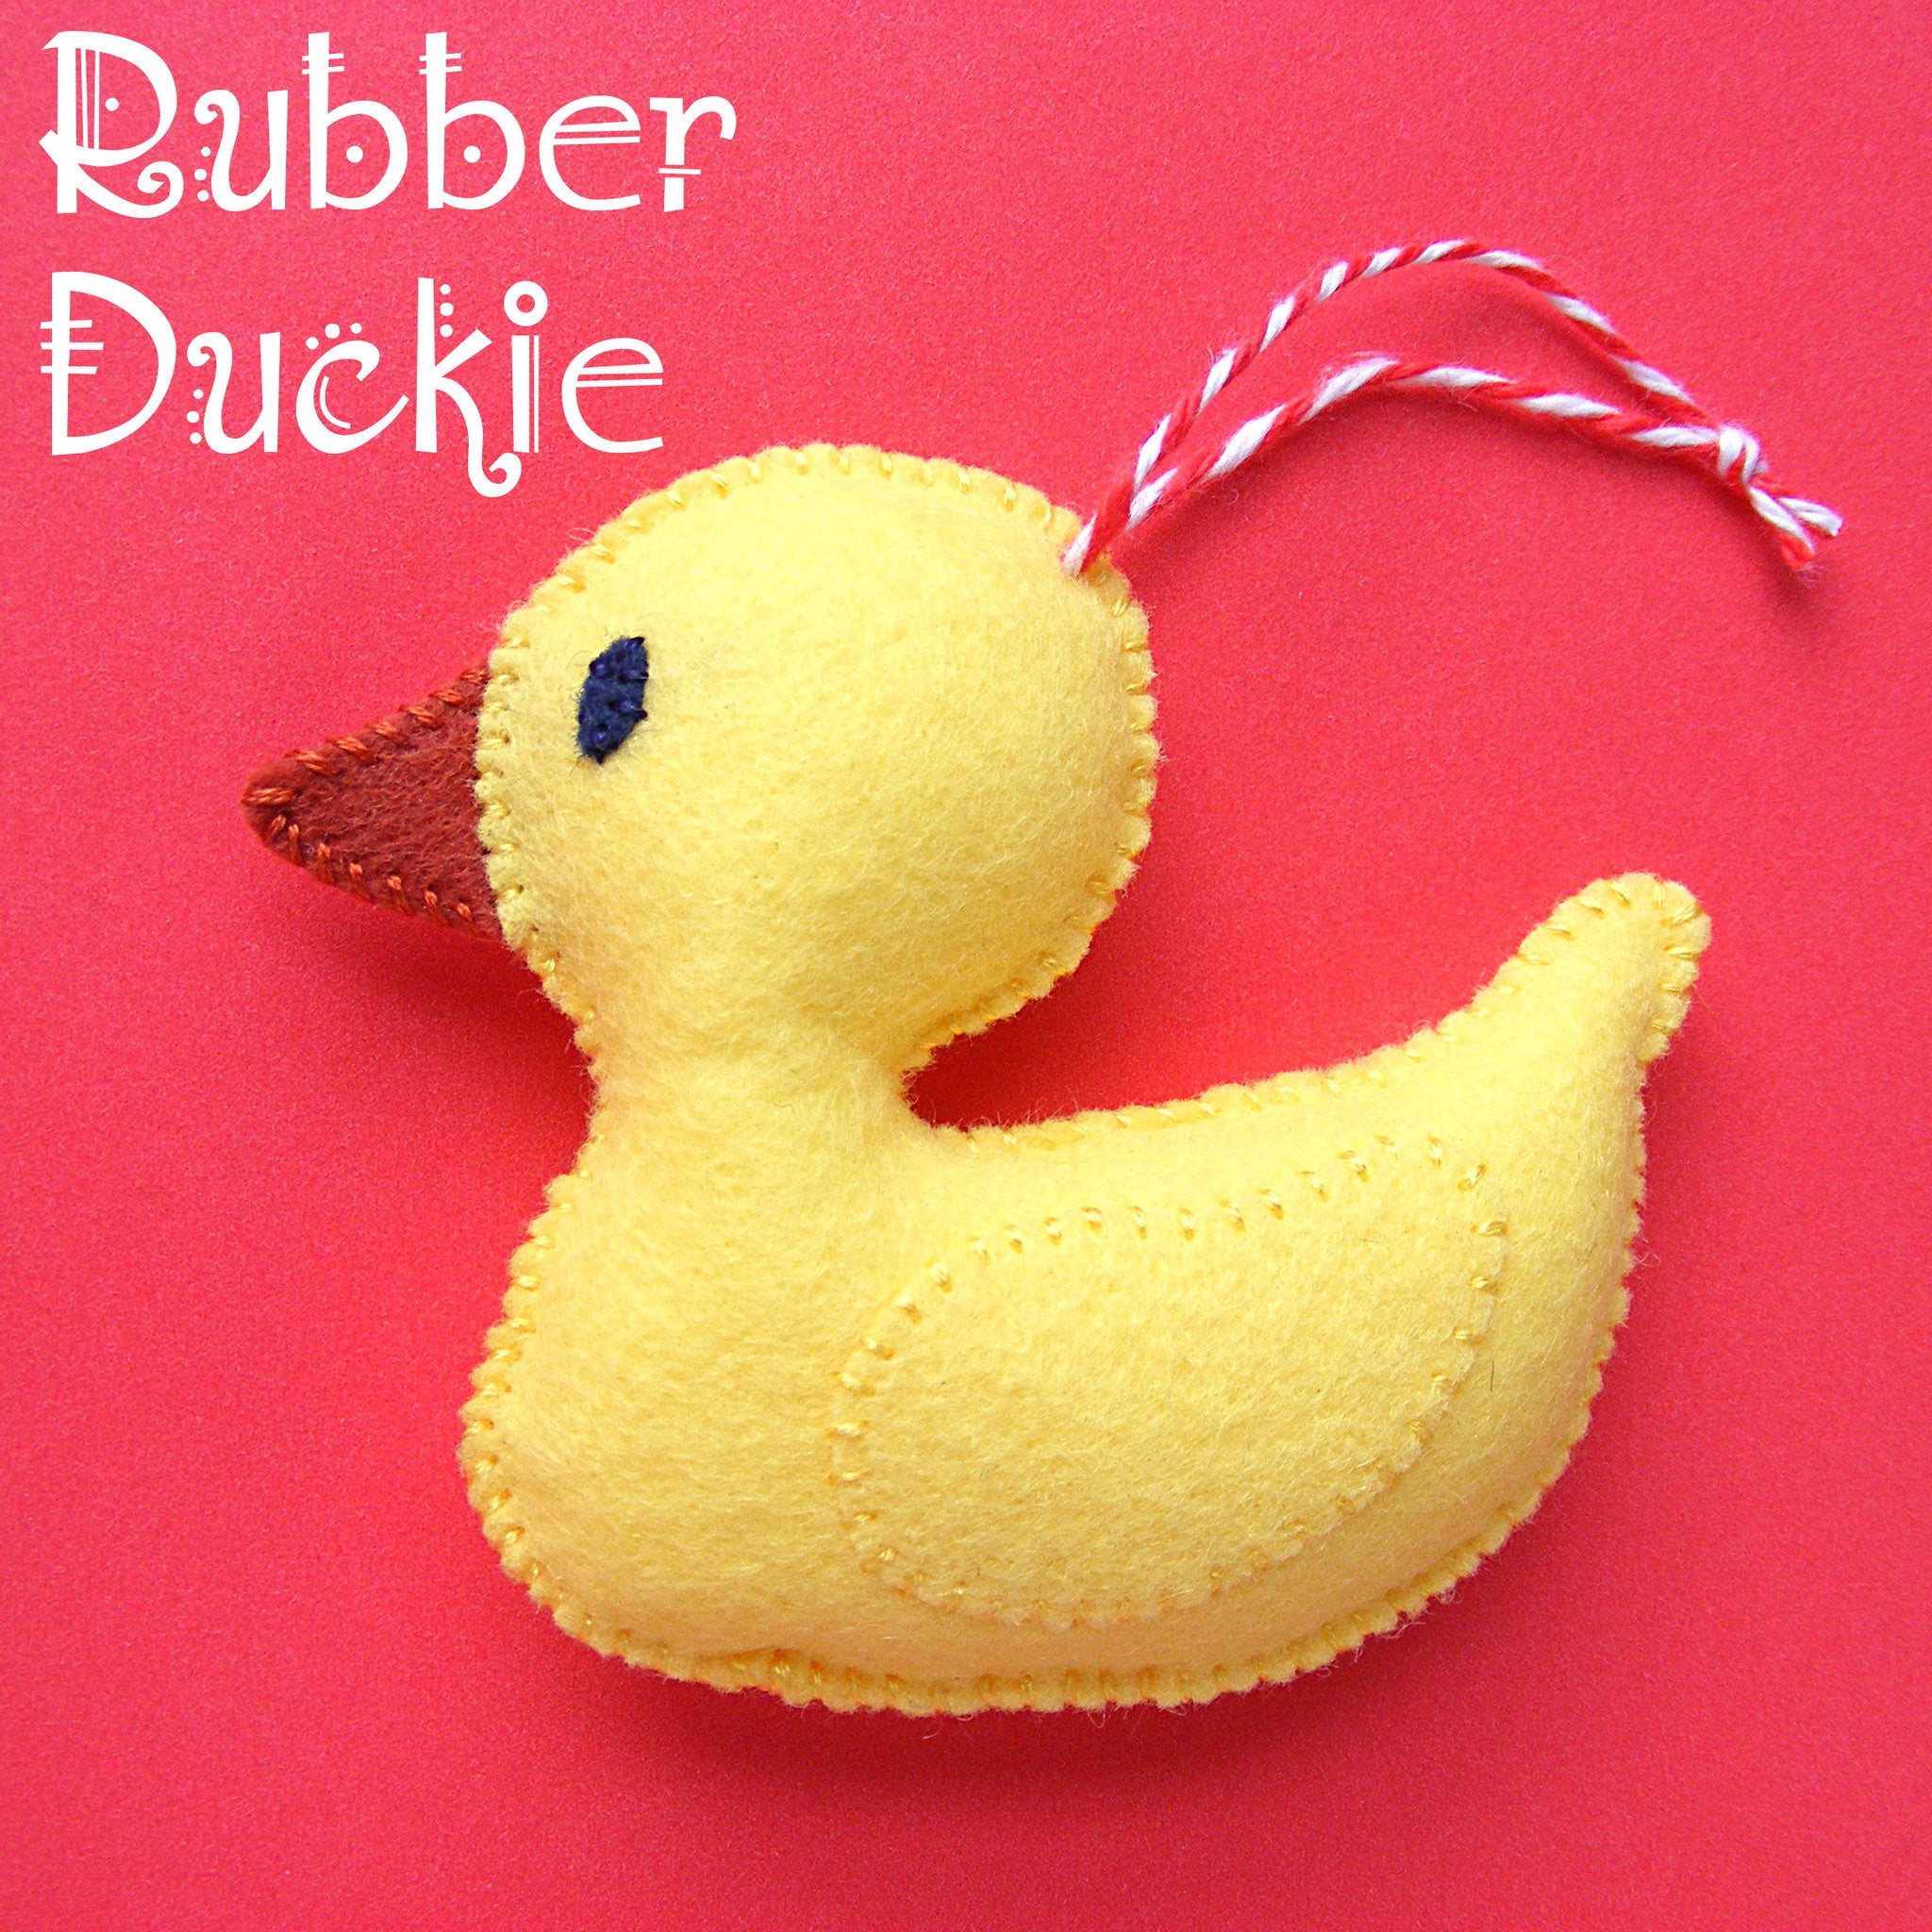 Rubber Duckie Ornament Pattern